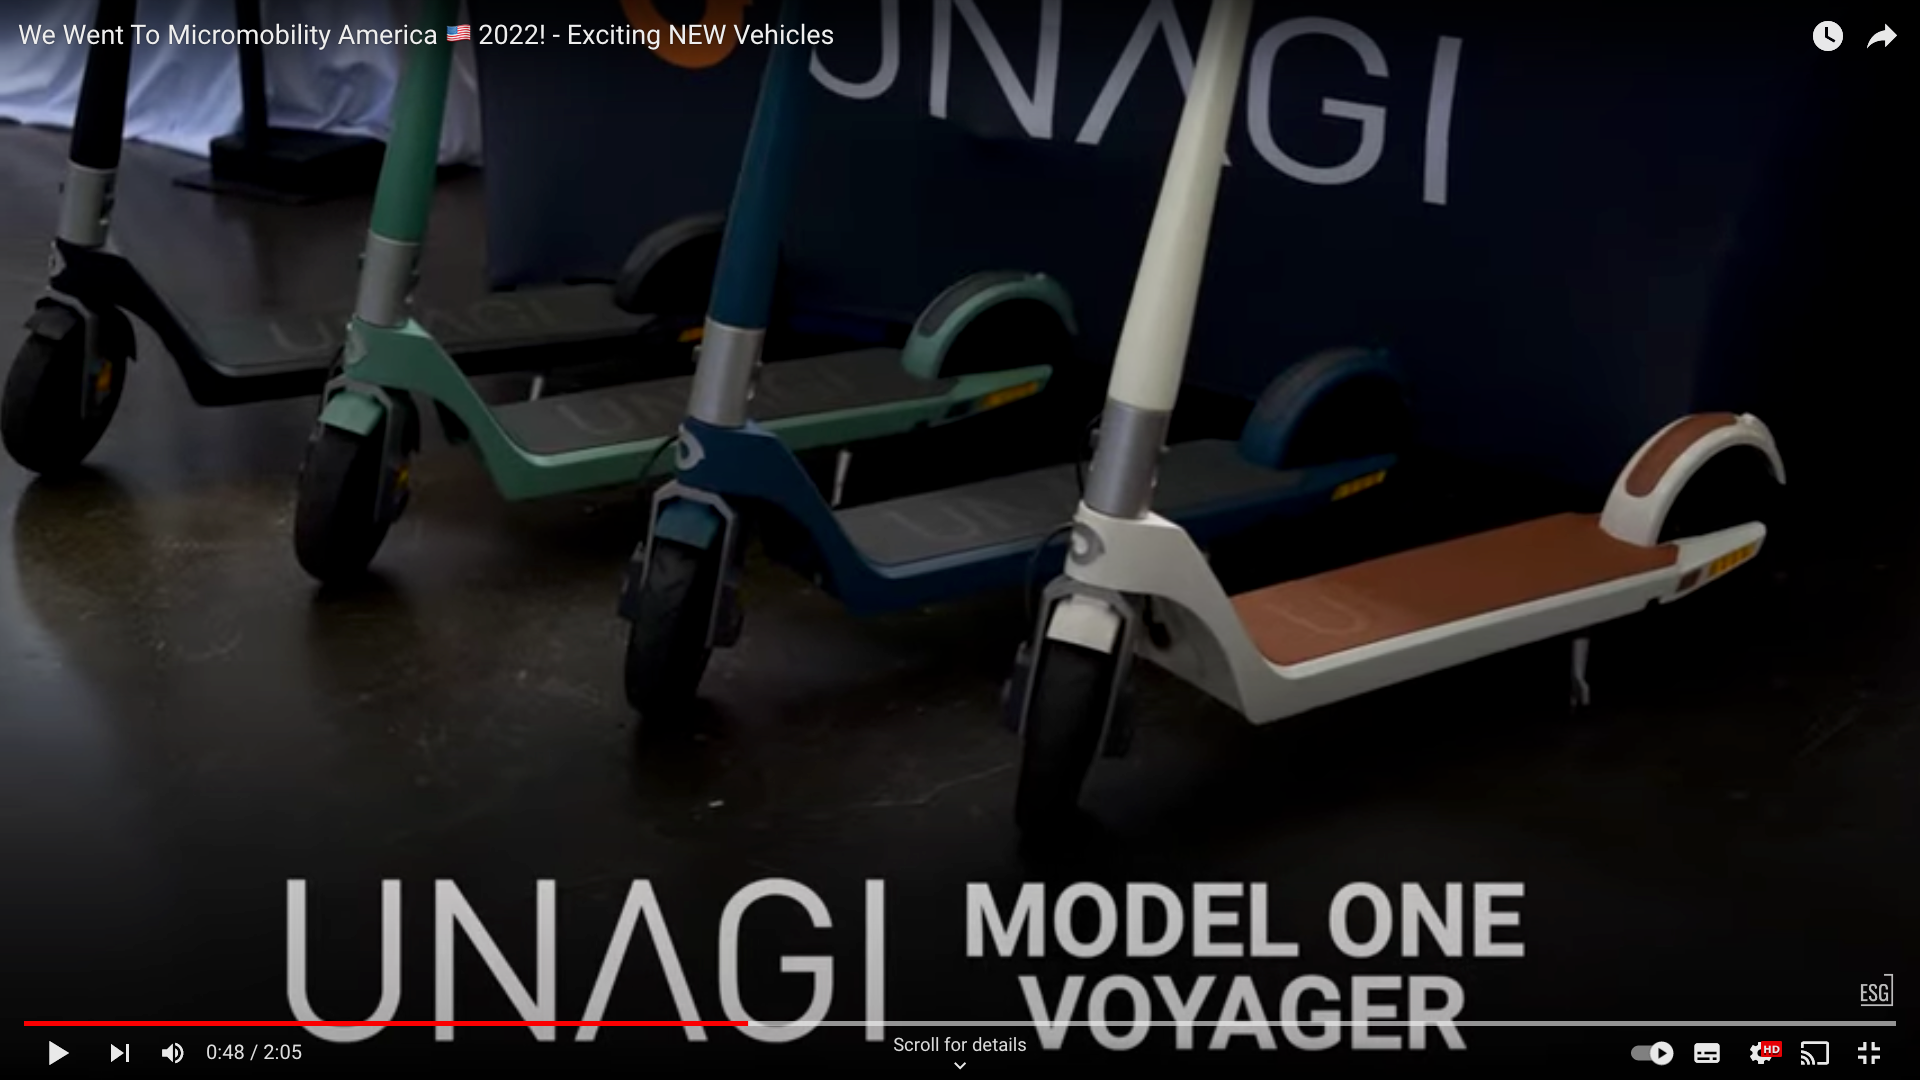 Unagi Model One Voyager